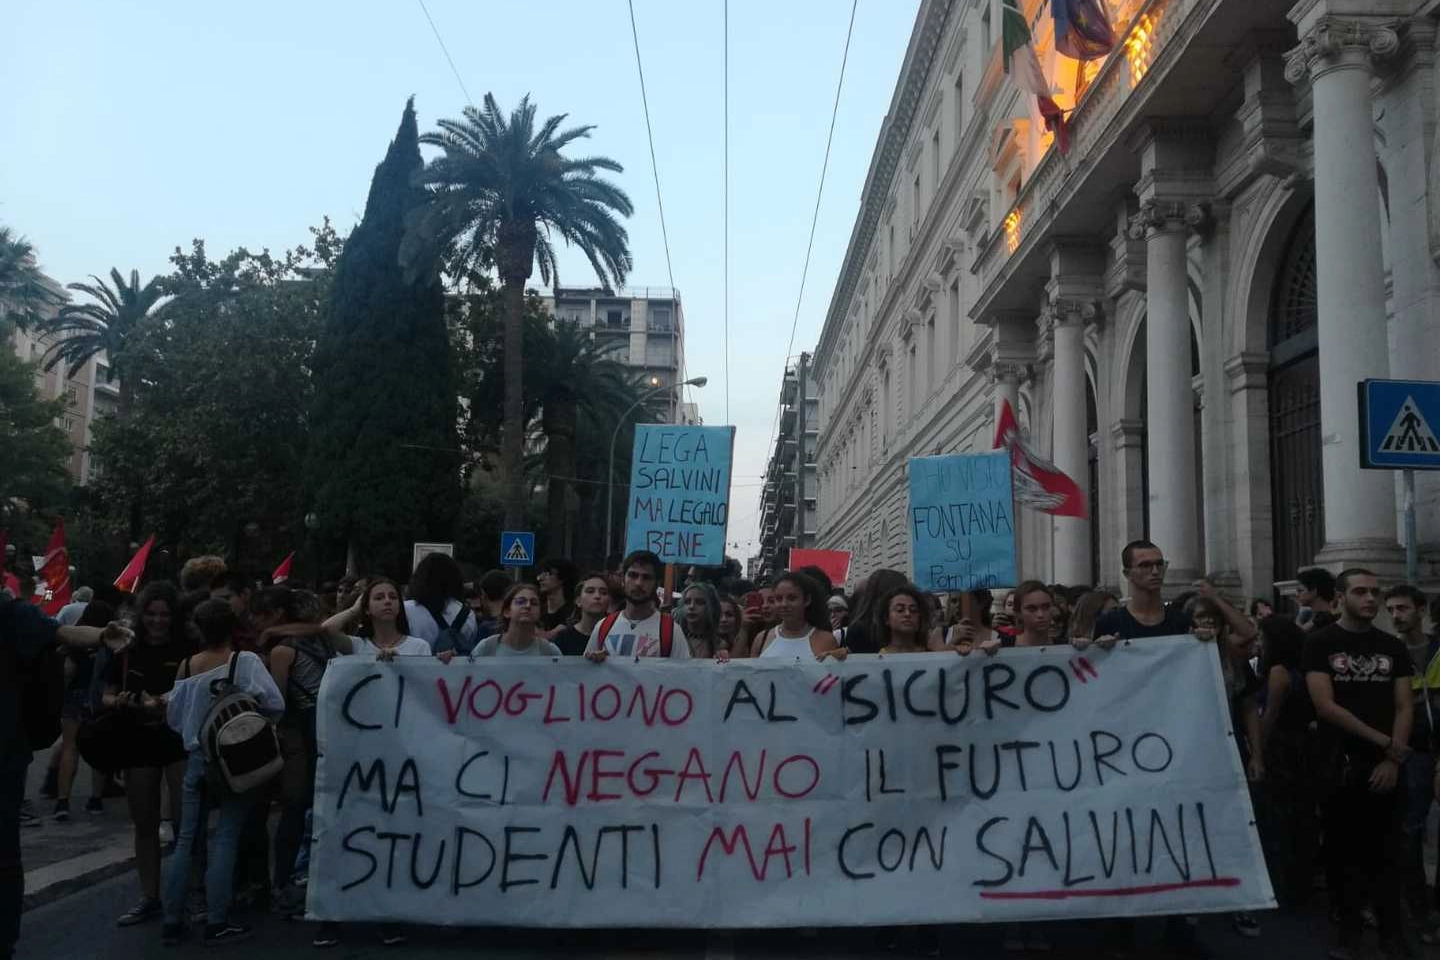 Il corteo anti Salvini a Bari prima dell'aggressione (Dire)